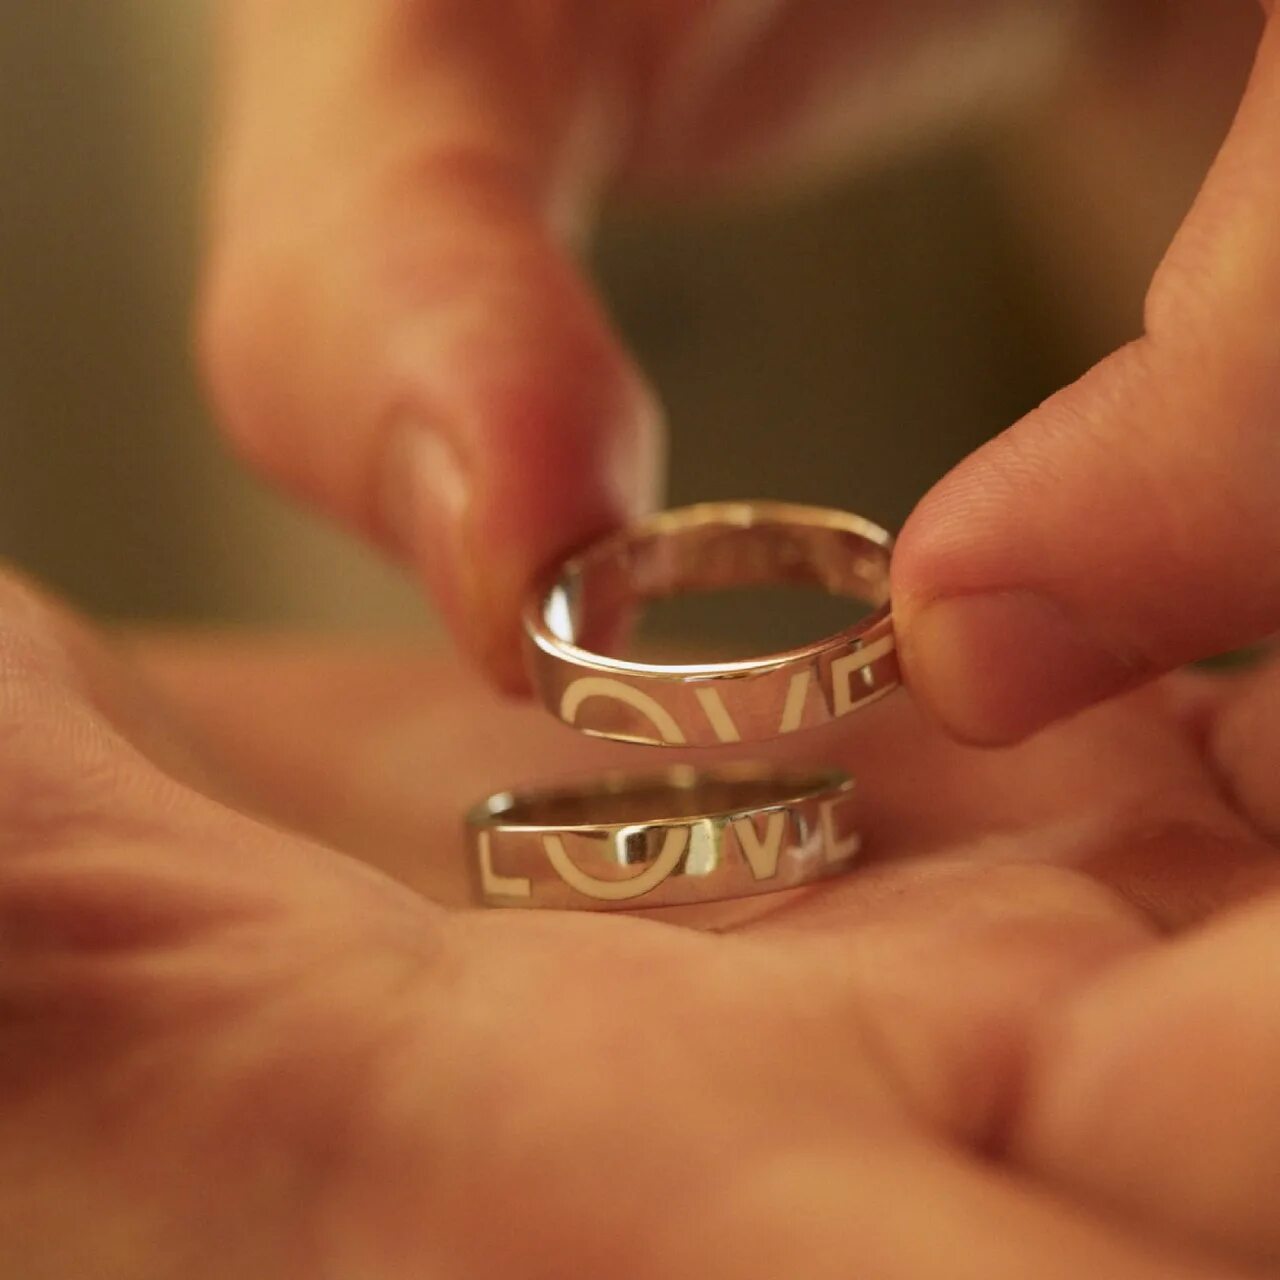 Бронзовое кольцо любовь. Кольцо для любимой. Кольцо любви. Кольцо AVGVST. Кольцо для любимой женщины.